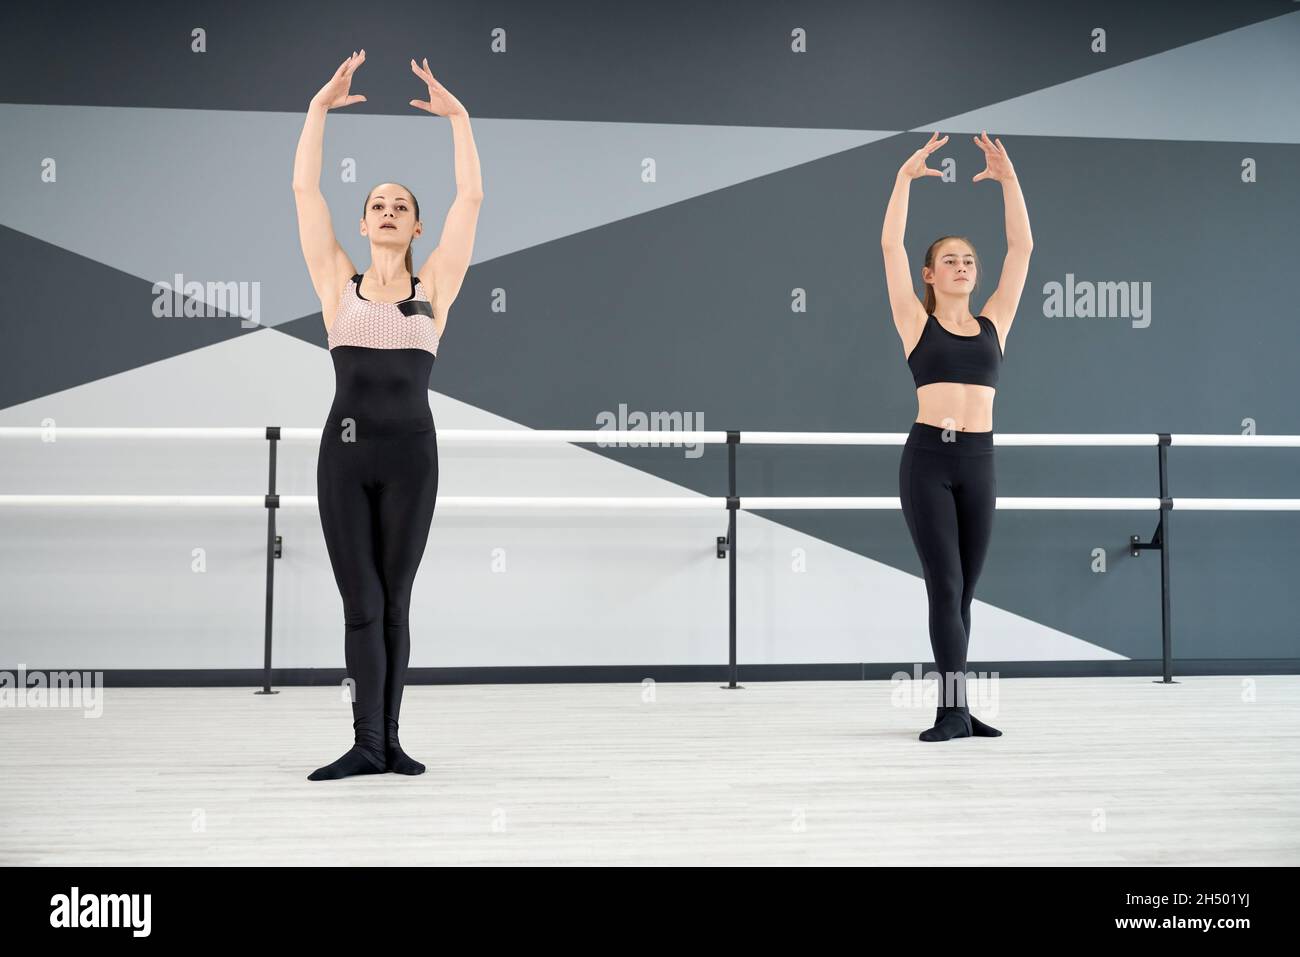 Erwachsene weibliche Ausbilderin hilft jungen hübschen Mädchen in schwarzer Sportkleidung lernen Ballett Pose mit den Händen nach oben. Zwei synchronisierte Frauen üben in der Halle, Hi-Tech-Interieur. Choreographie, Gymnastik-Konzept. Stockfoto